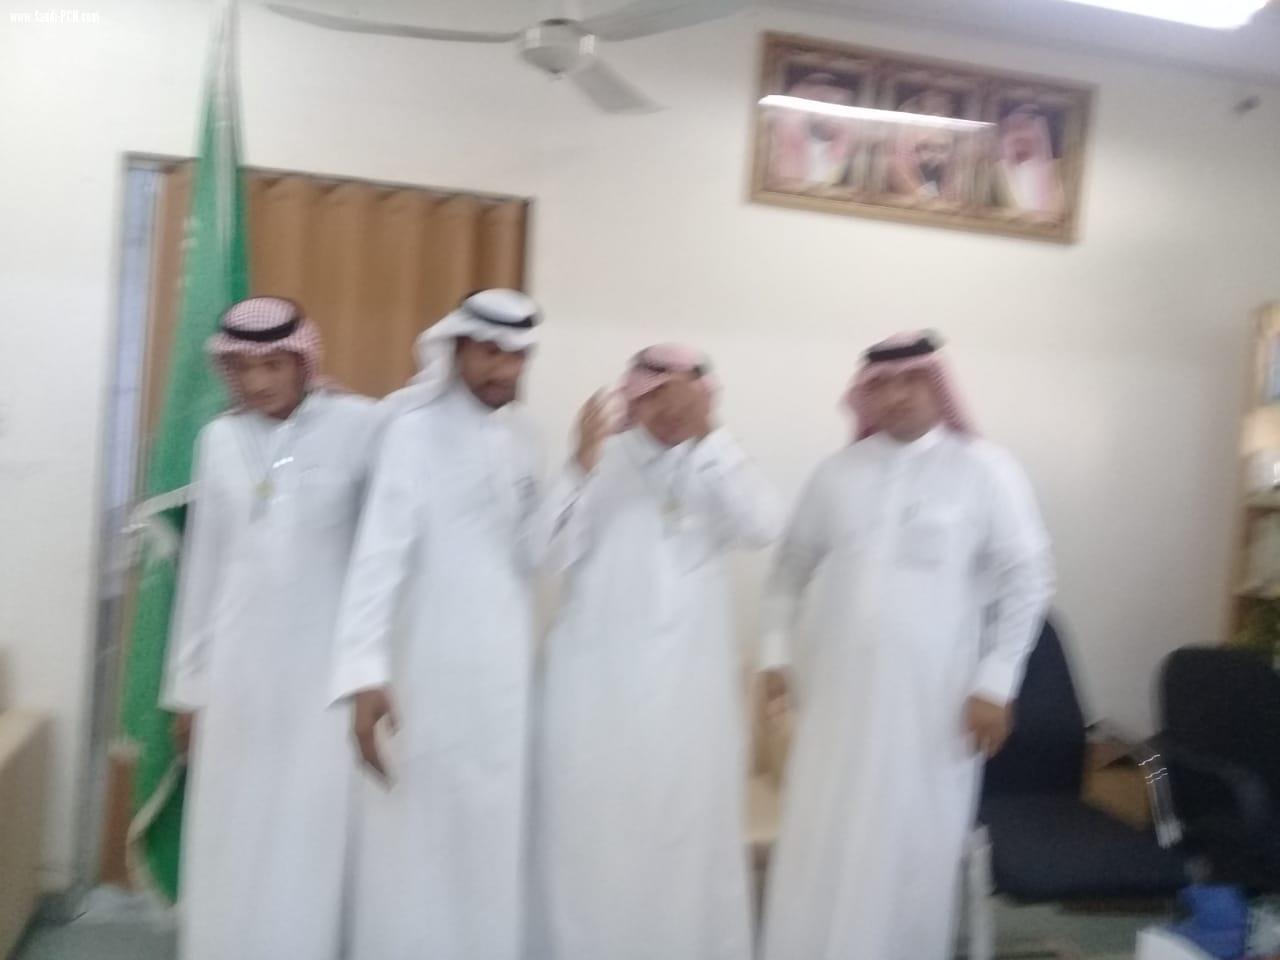 مساعد مدير مكتب التعليم بالعيدابي ( الغزواني )  يكرم الفريق الكشفي بمتوسطة العيدابي الأولى لحصولهم على المركز الأول بمسابقة رسل السلام